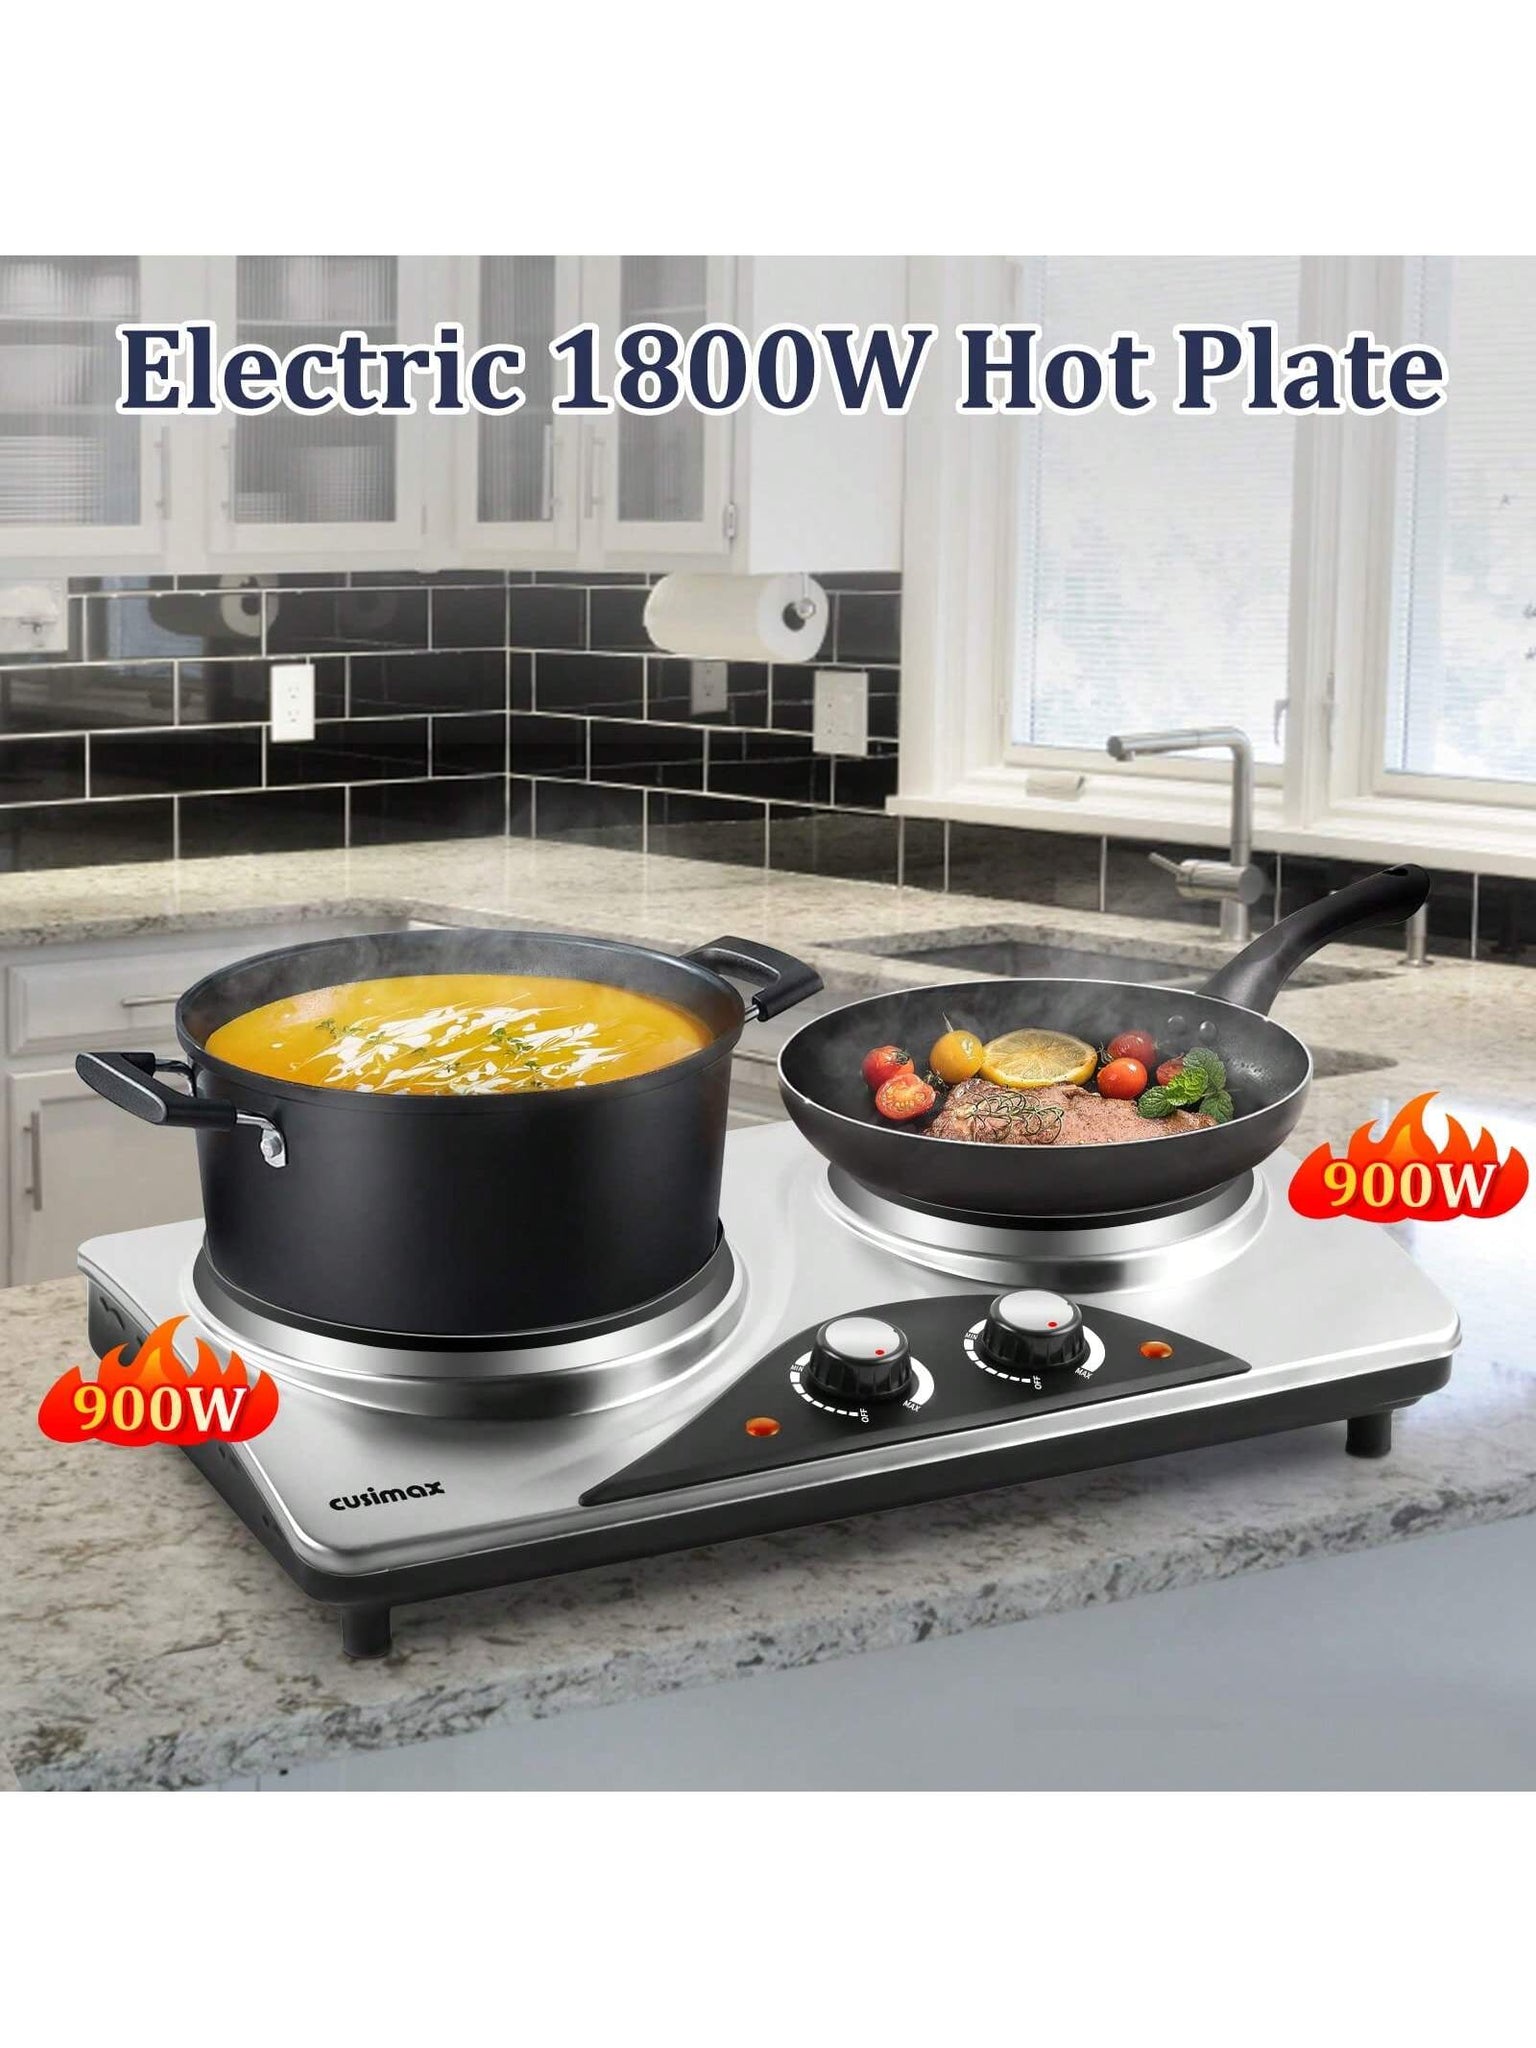 Dual burner, CUSIMAX 1800W hot plate, ceramic electric burner